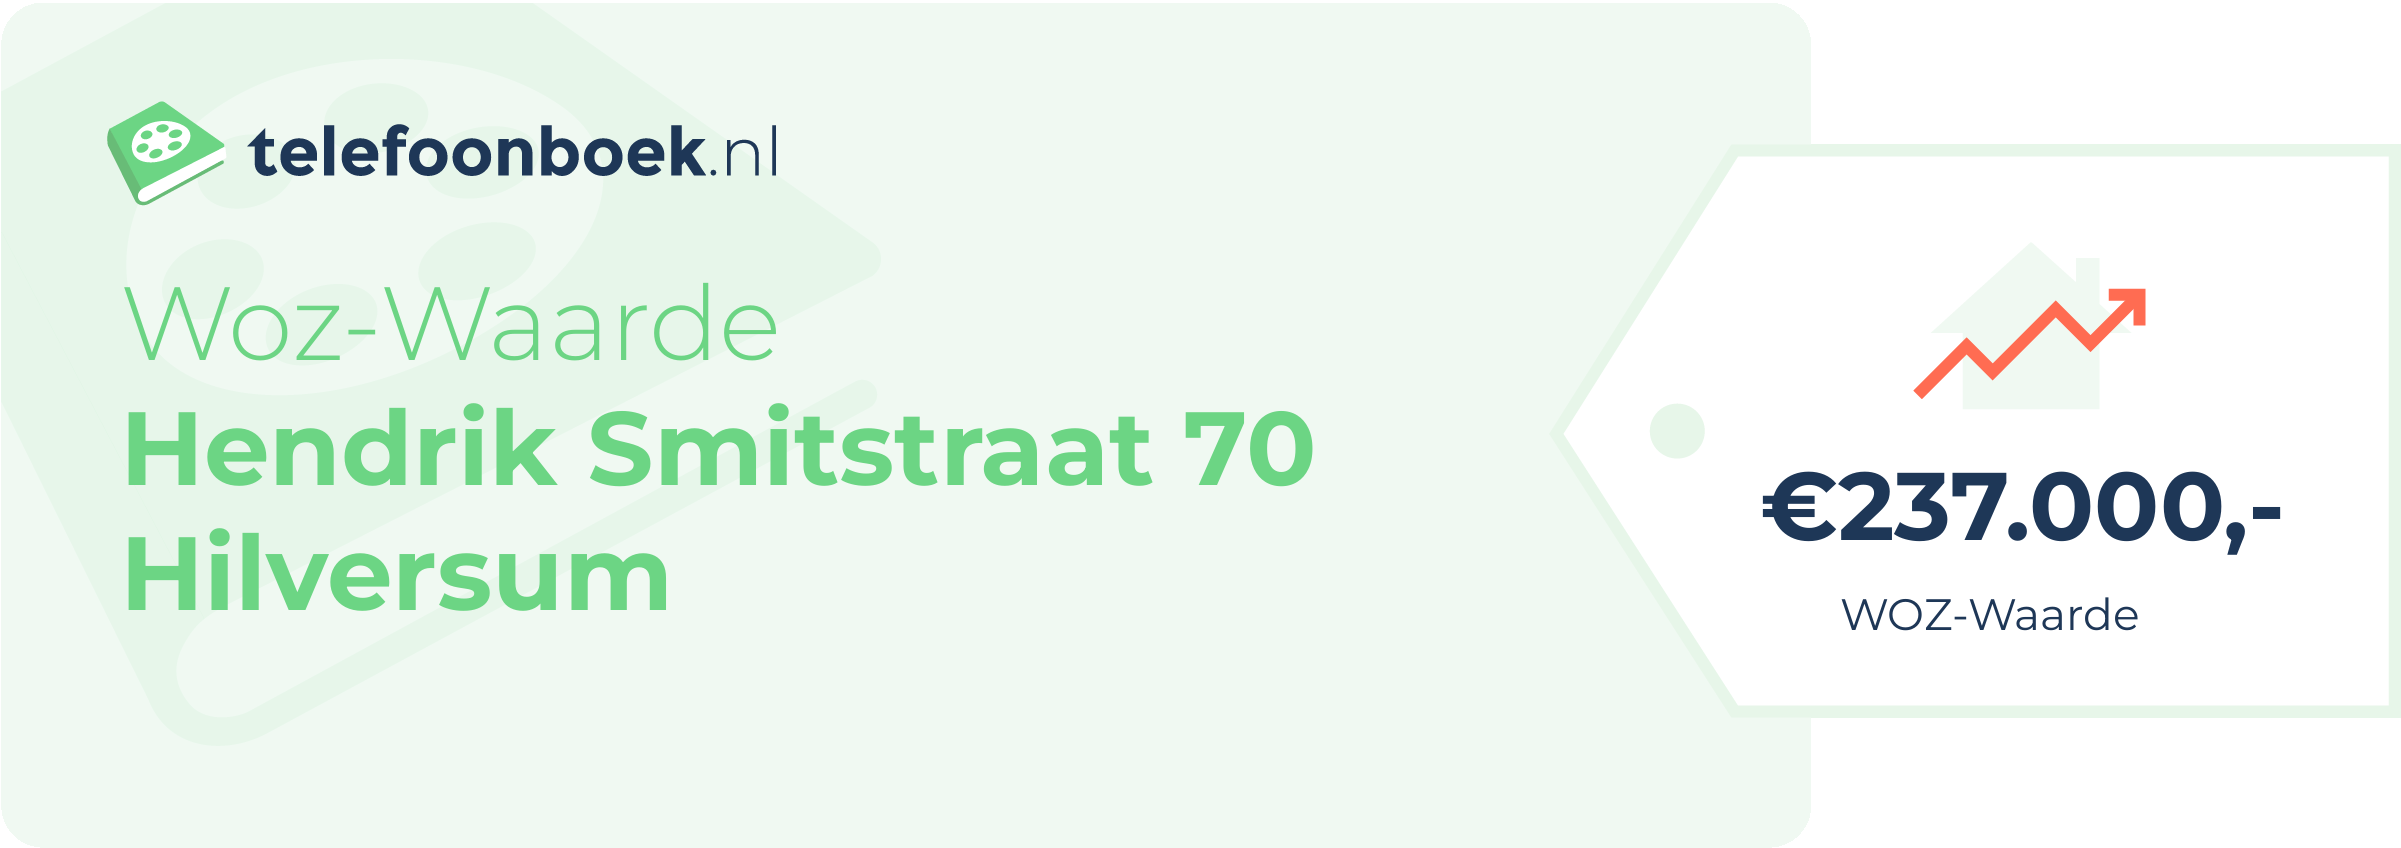 WOZ-waarde Hendrik Smitstraat 70 Hilversum